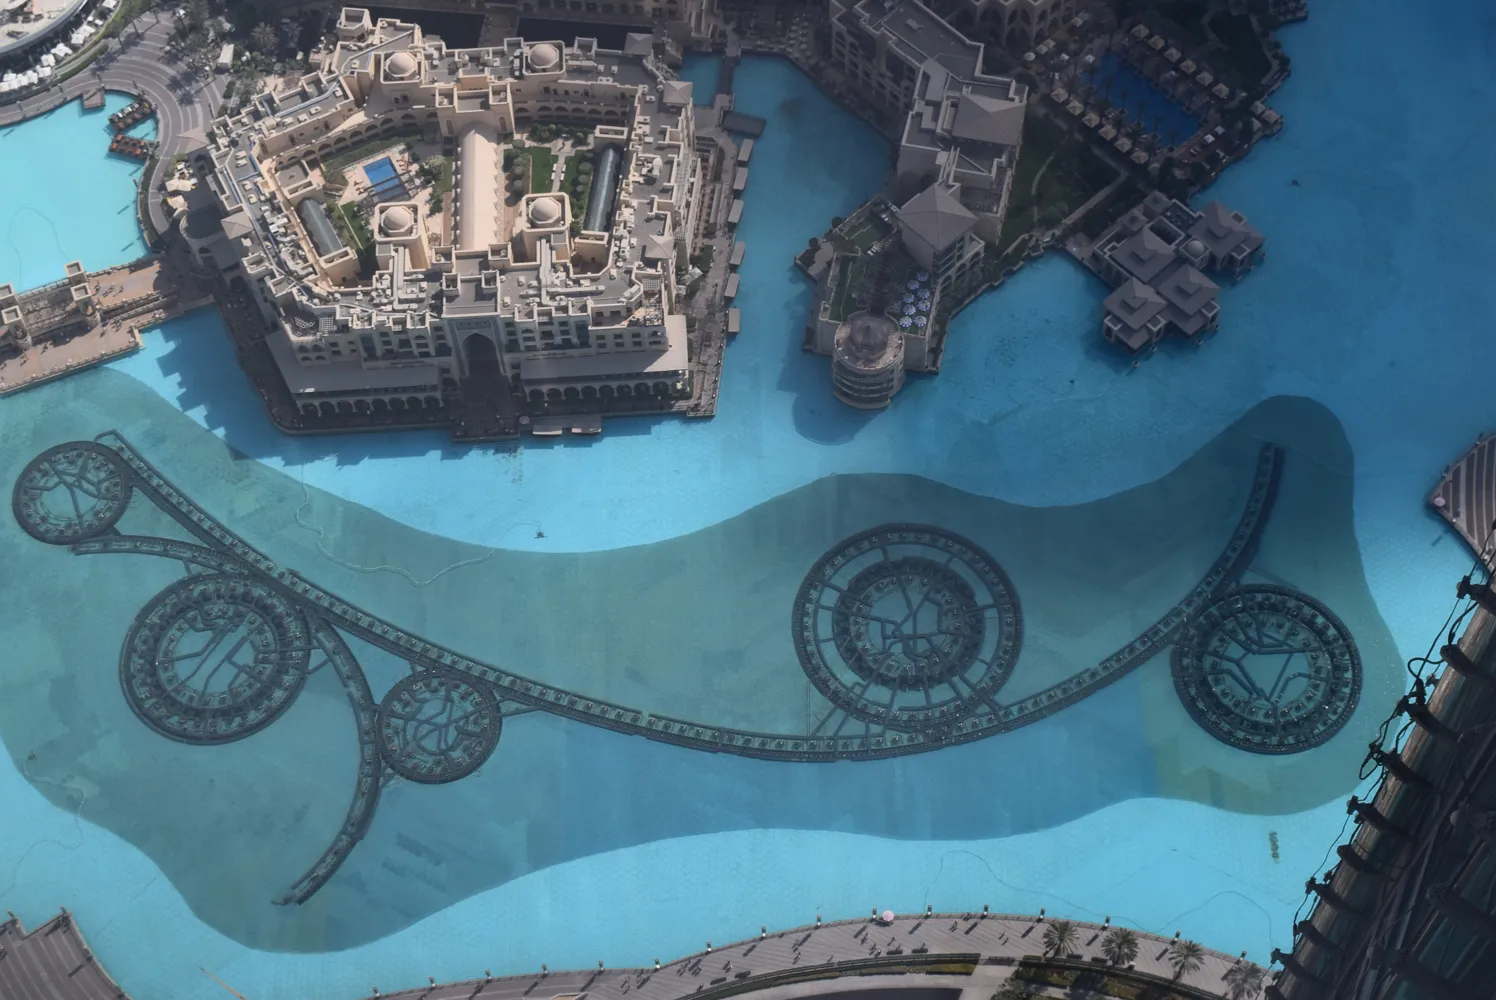 Dubai Fountains seen from the top of Burj Khalifa.